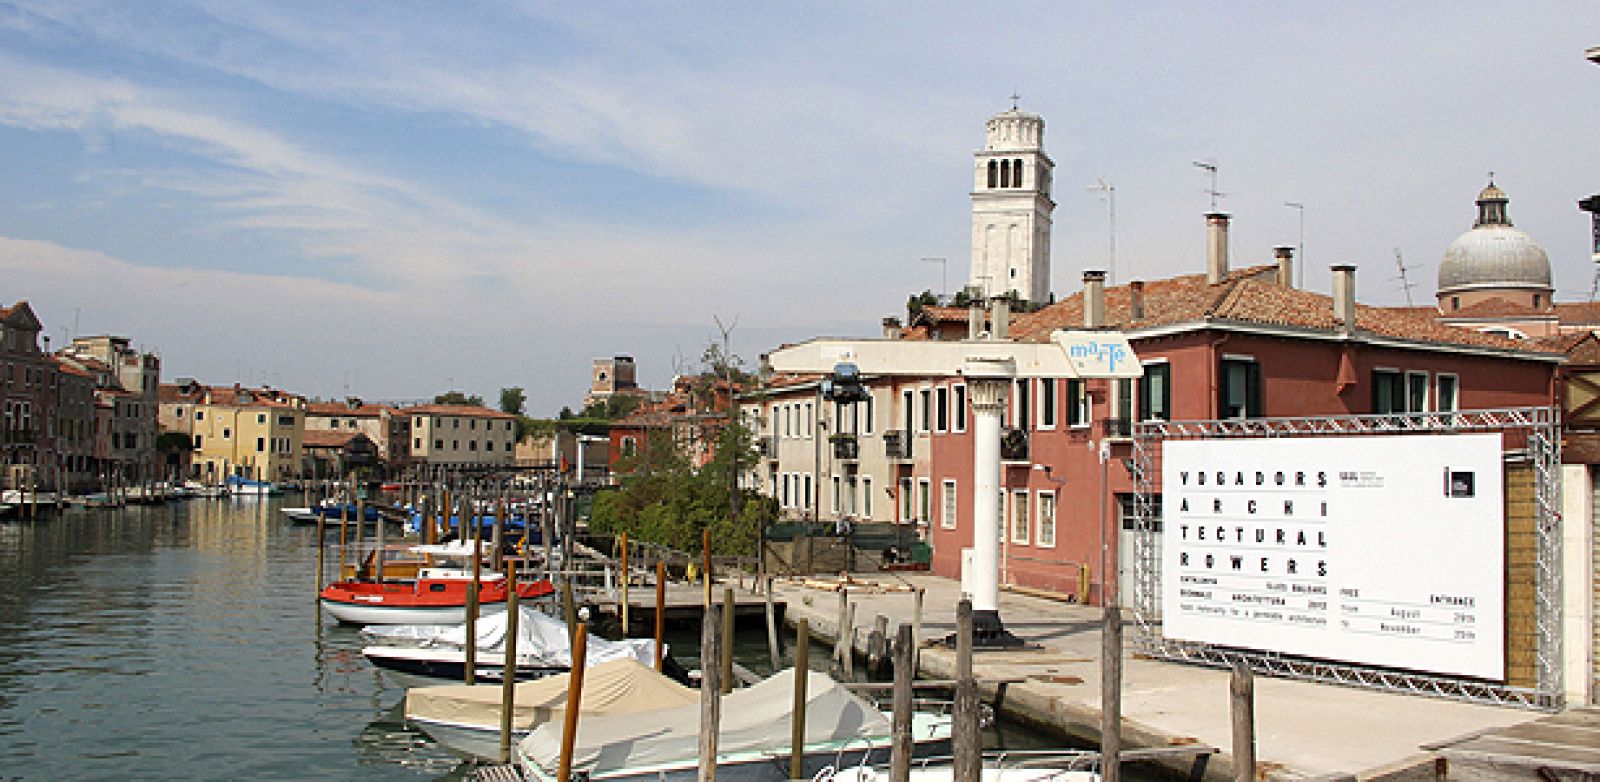 La Bienal de Arquitectura de Venecia comienza este miércoles